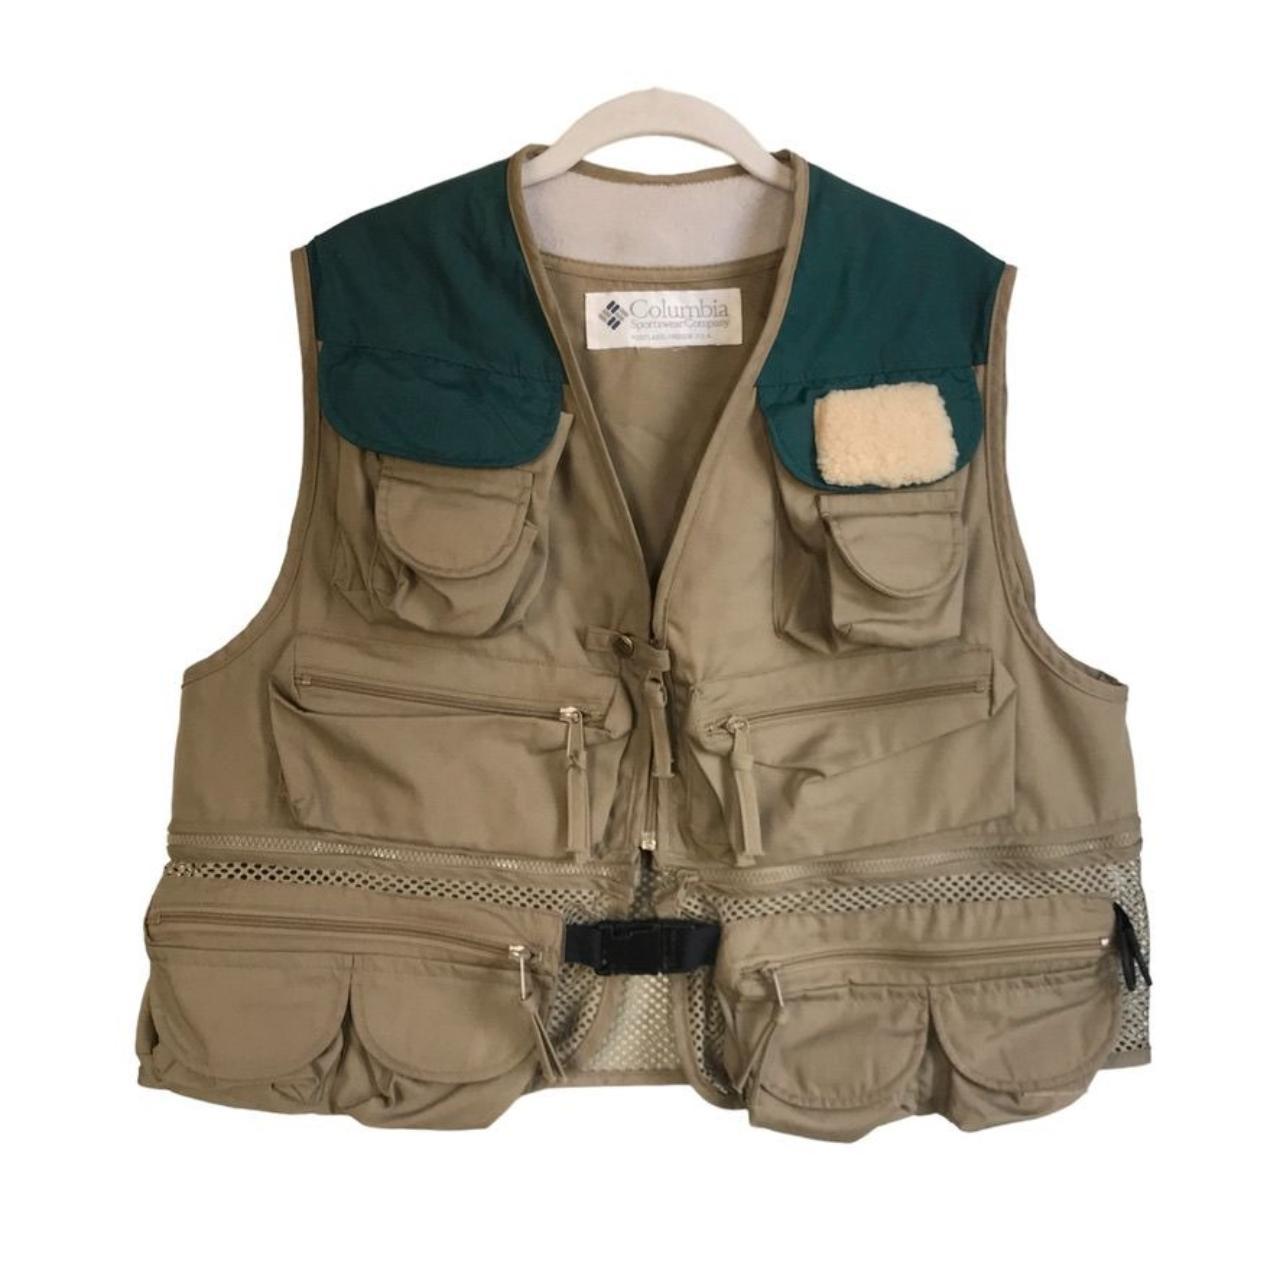 Cabela's Performance Fishing Gear Vest in Tan/Green - Depop